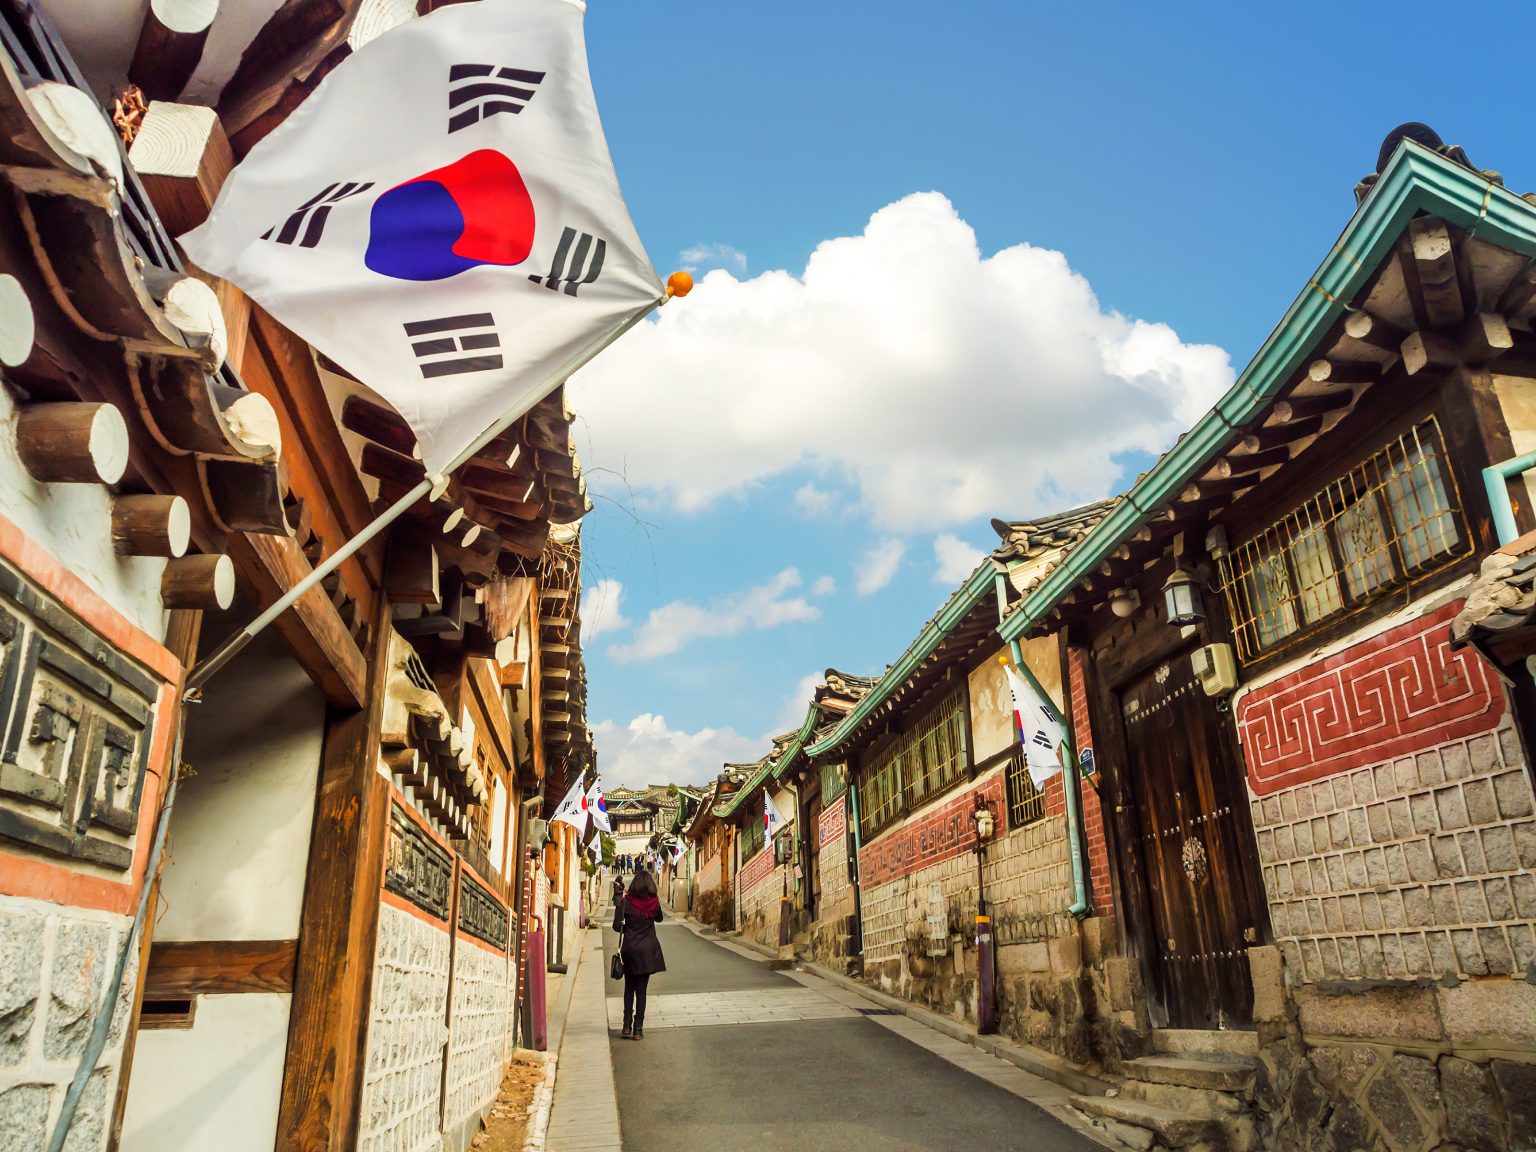 Hộ chiếu Hàn Quốc: Hộ chiếu Hàn Quốc là chìa khóa để mở ra cánh cửa đến với đất nước này. Được cấp phép với những thủ tục đơn giản và nhanh chóng, bạn sẽ sẵn sàng khám phá những điểm du lịch đẹp nhất tại Hàn Quốc. Hãy đọc về trải nghiệm đăng ký hộ chiếu Hàn Quốc và chuẩn bị cho chuyến đi sắp tới của bạn.